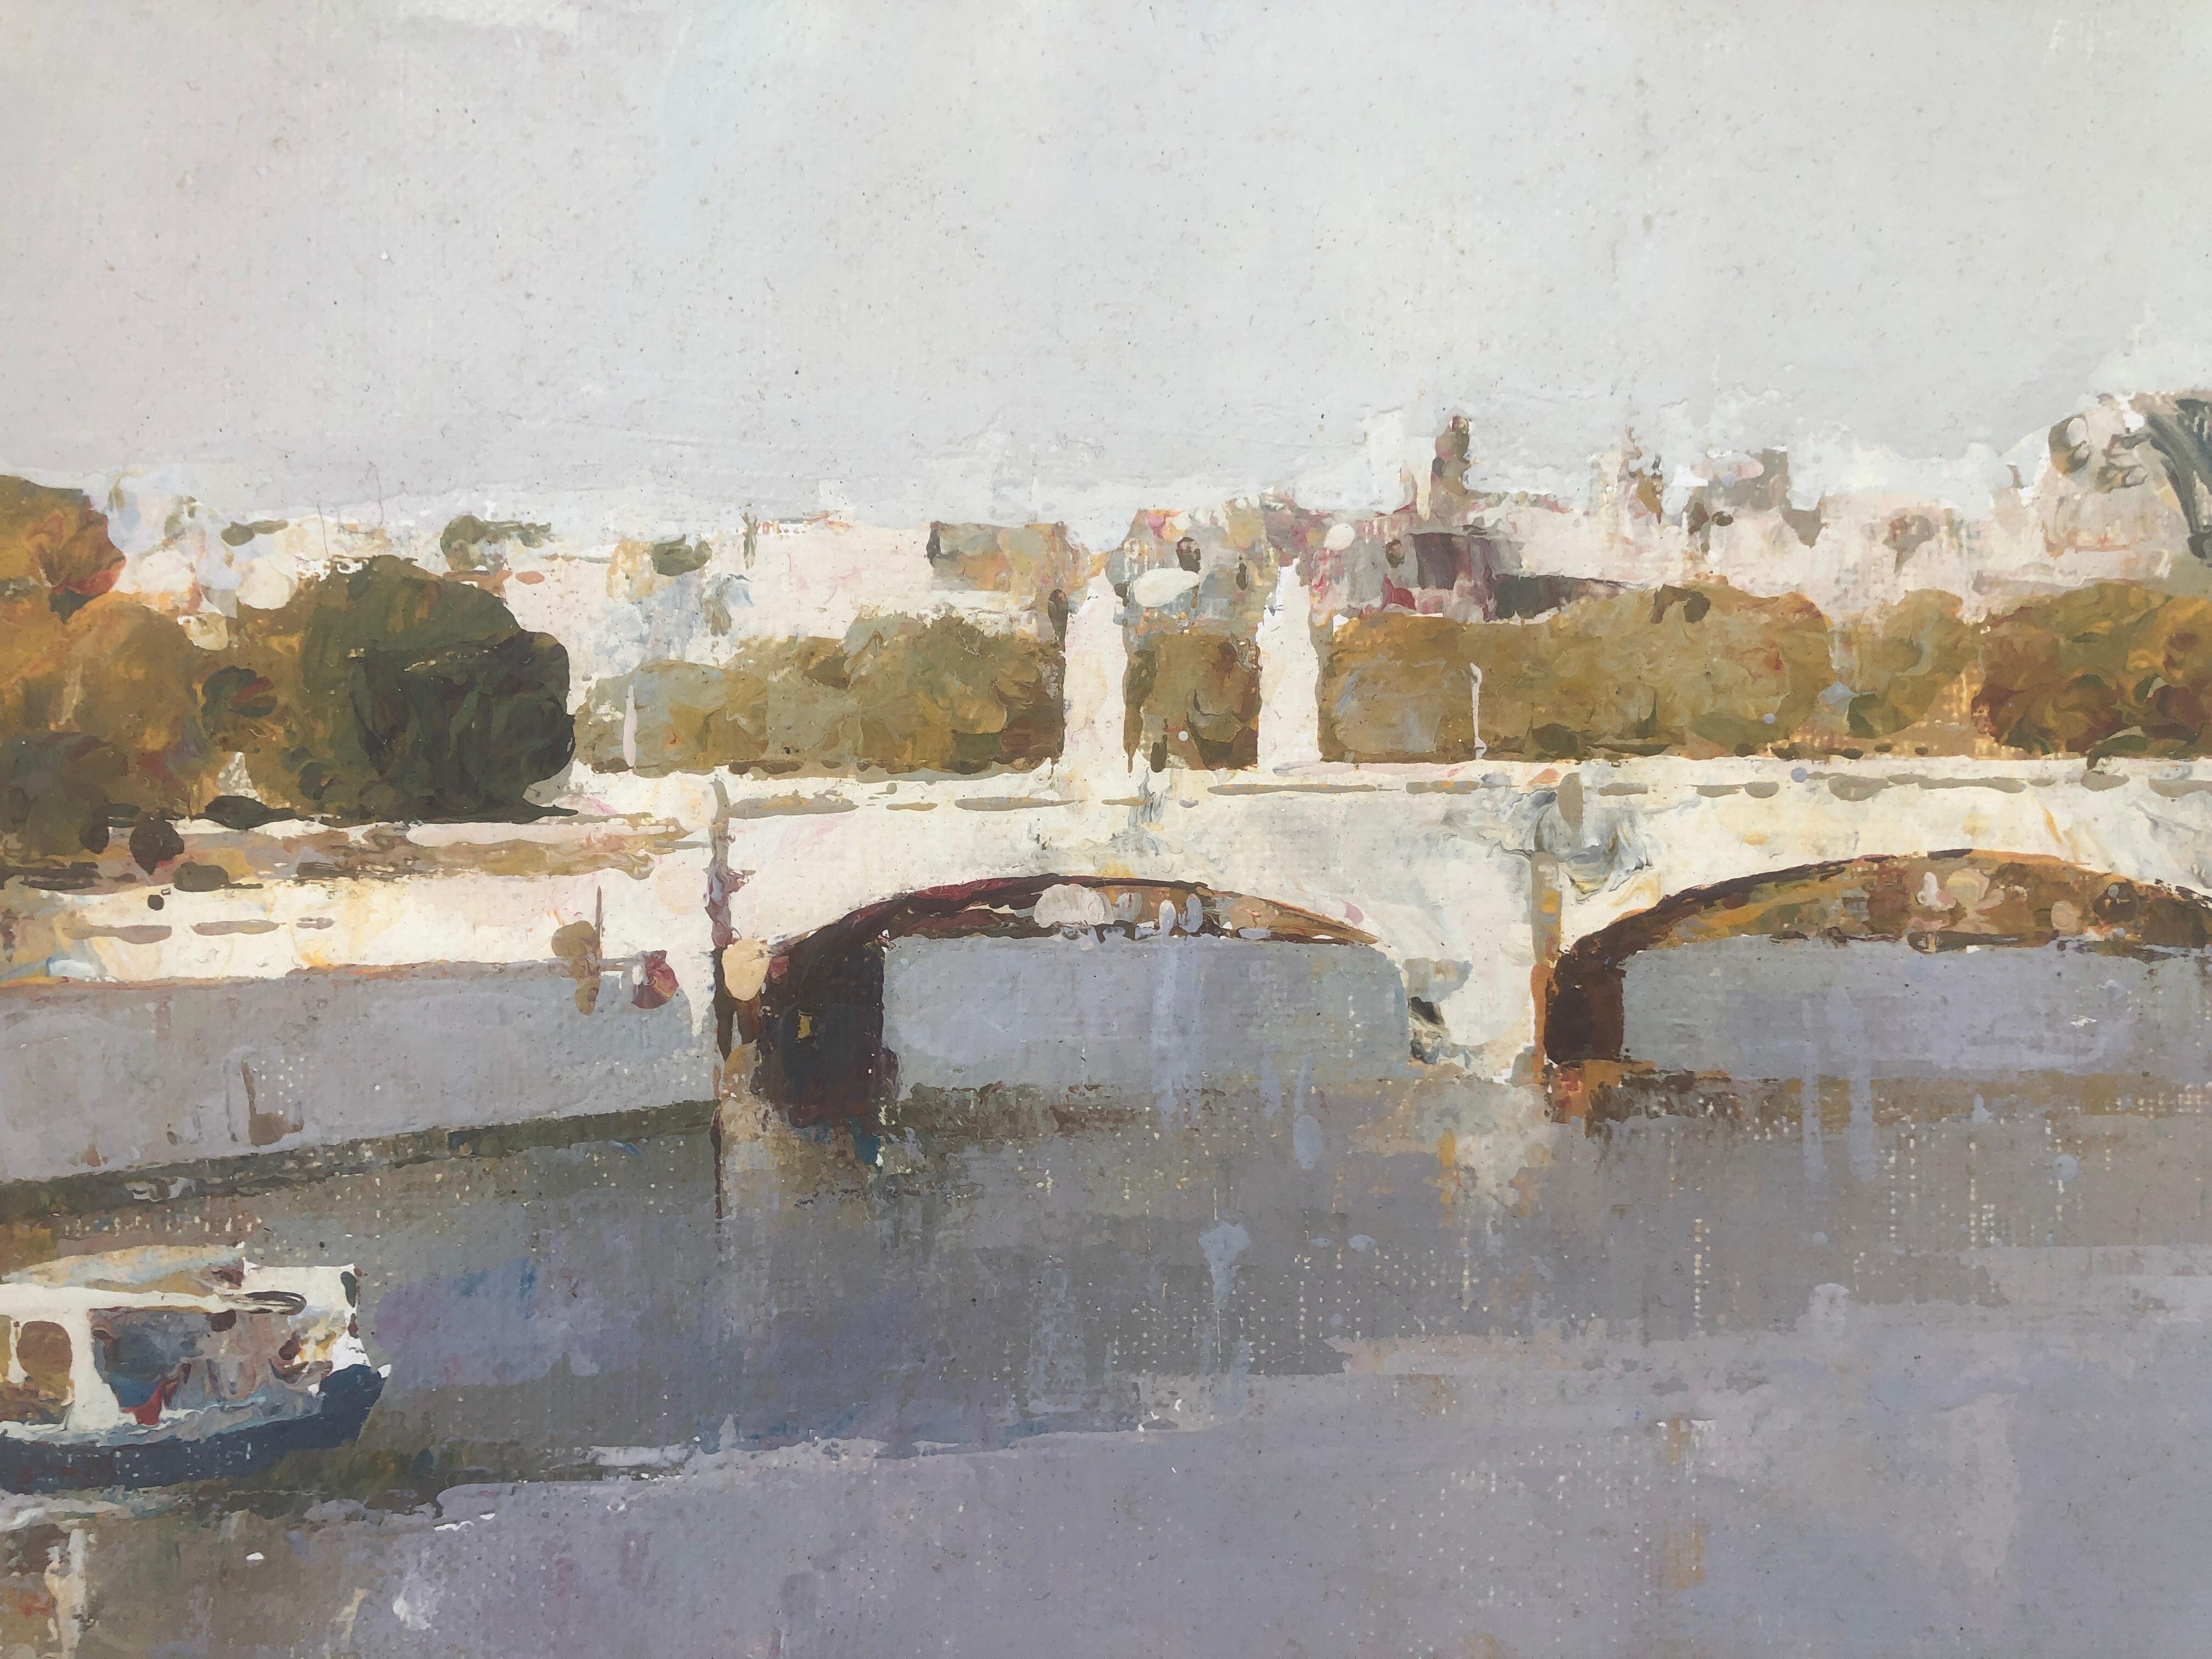 Rivière et pont huile sur toile peinture espagnole art européen - Réalisme Painting par Helios Gisbert